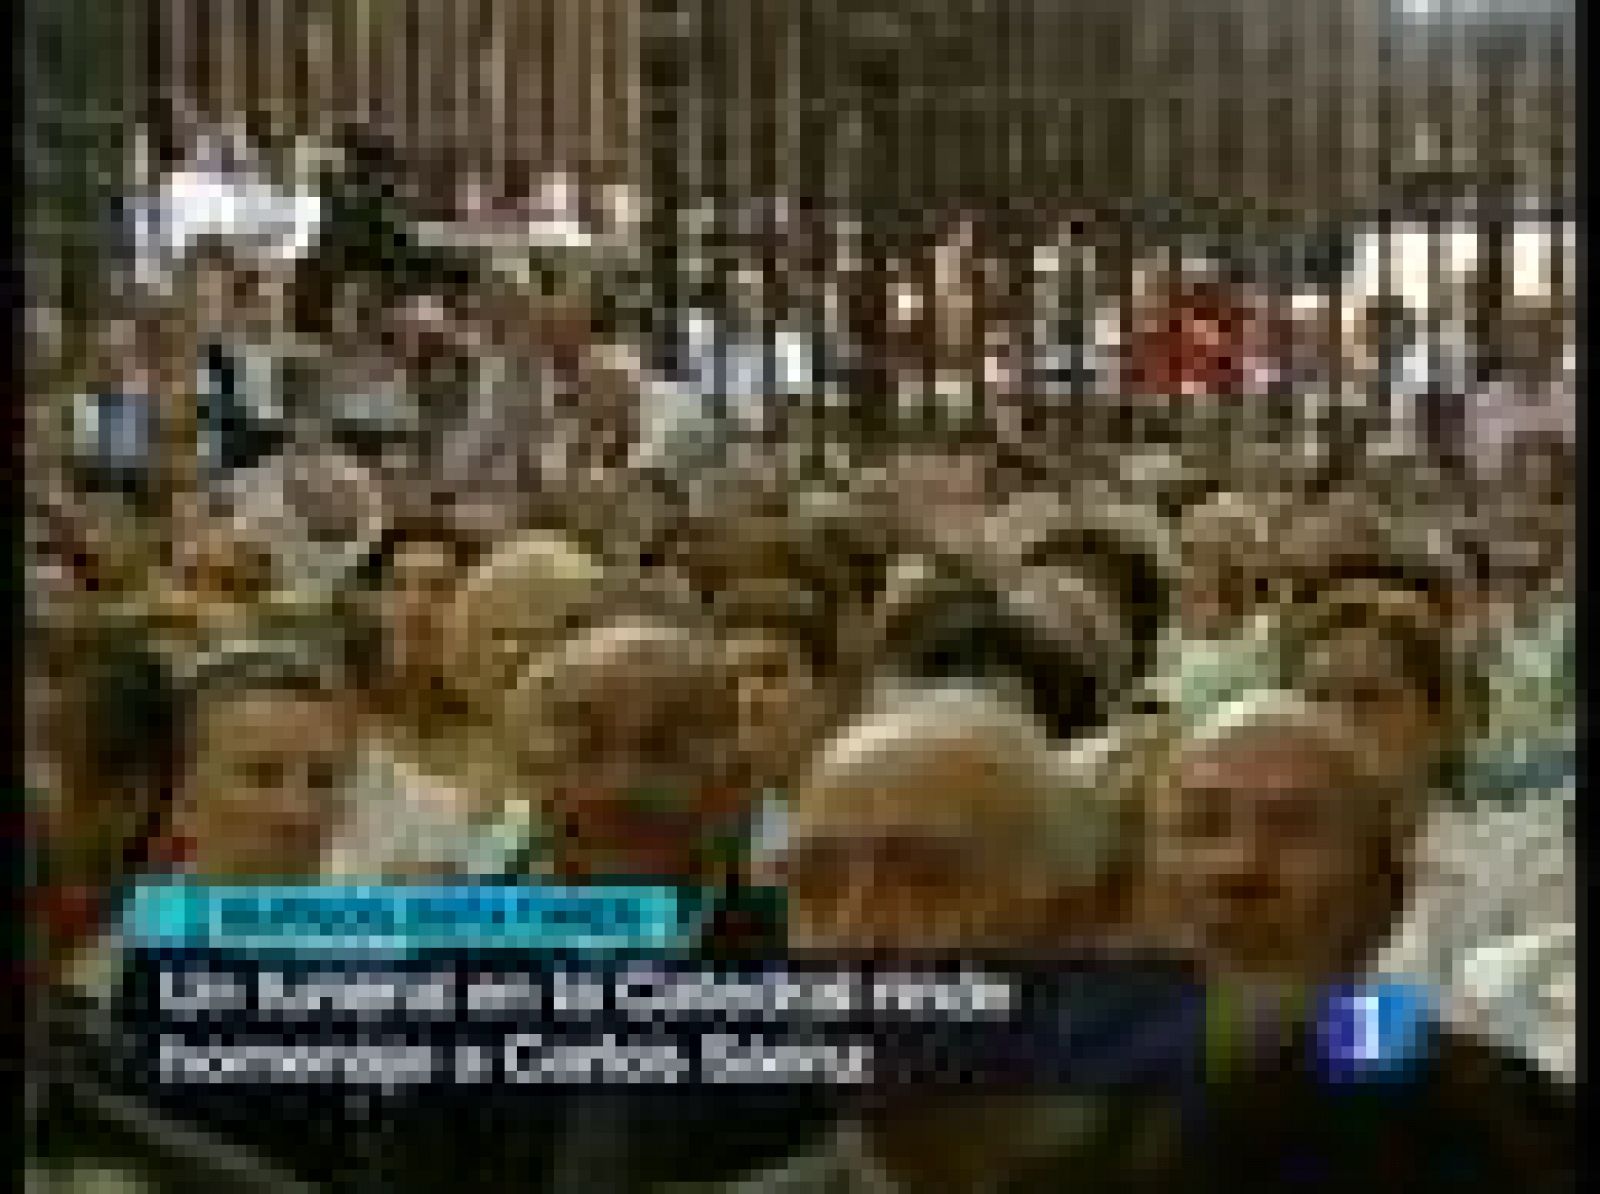 Centenares de personas han llenado la Catedral, donde el arzobispo ha oficiado un funeral en memoria del joven agente.